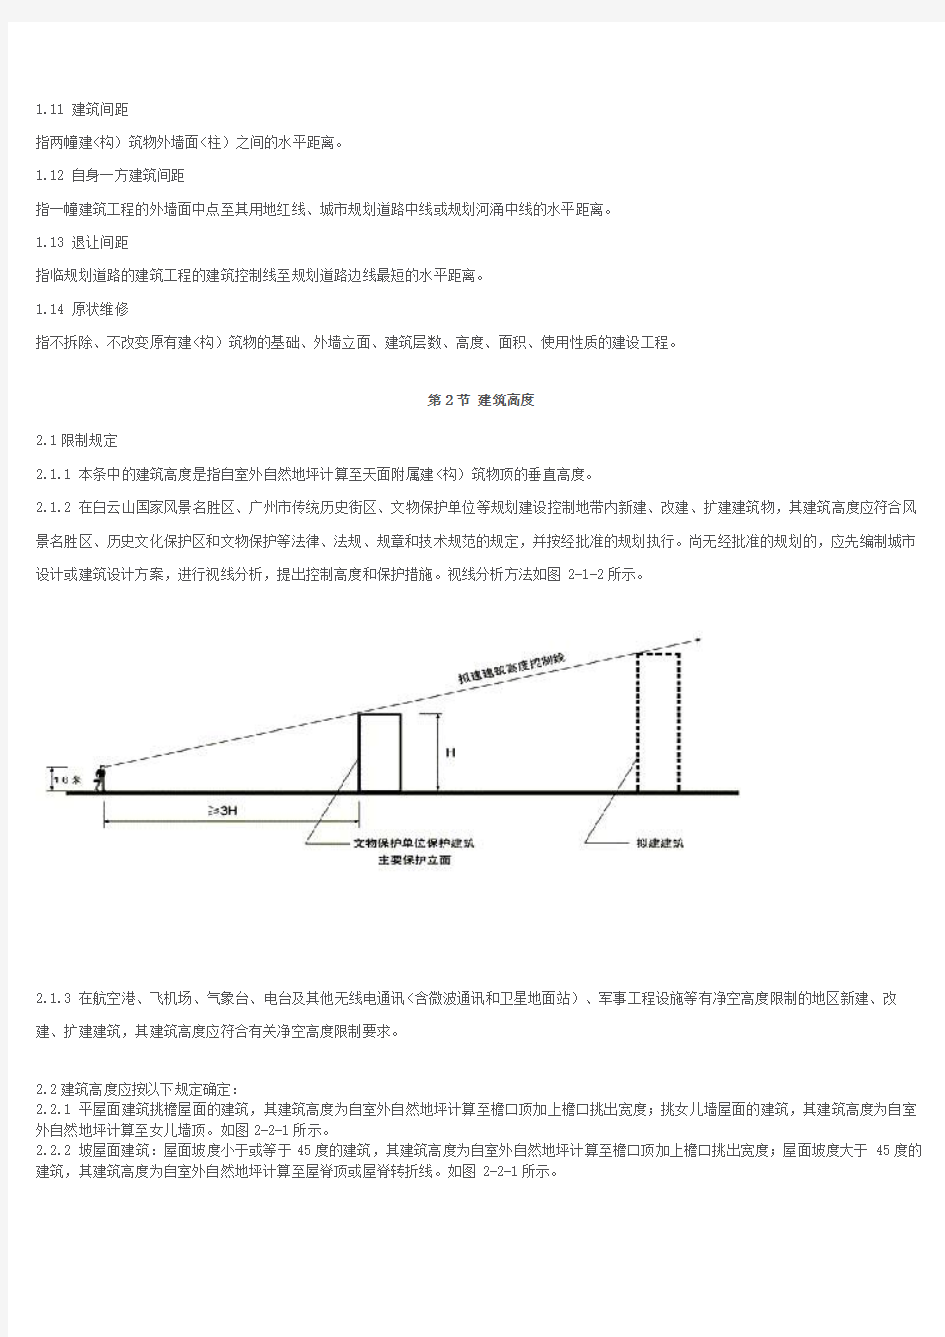 《广州市城市规划审批技术标准与准则建筑篇)——试行稿》(上)